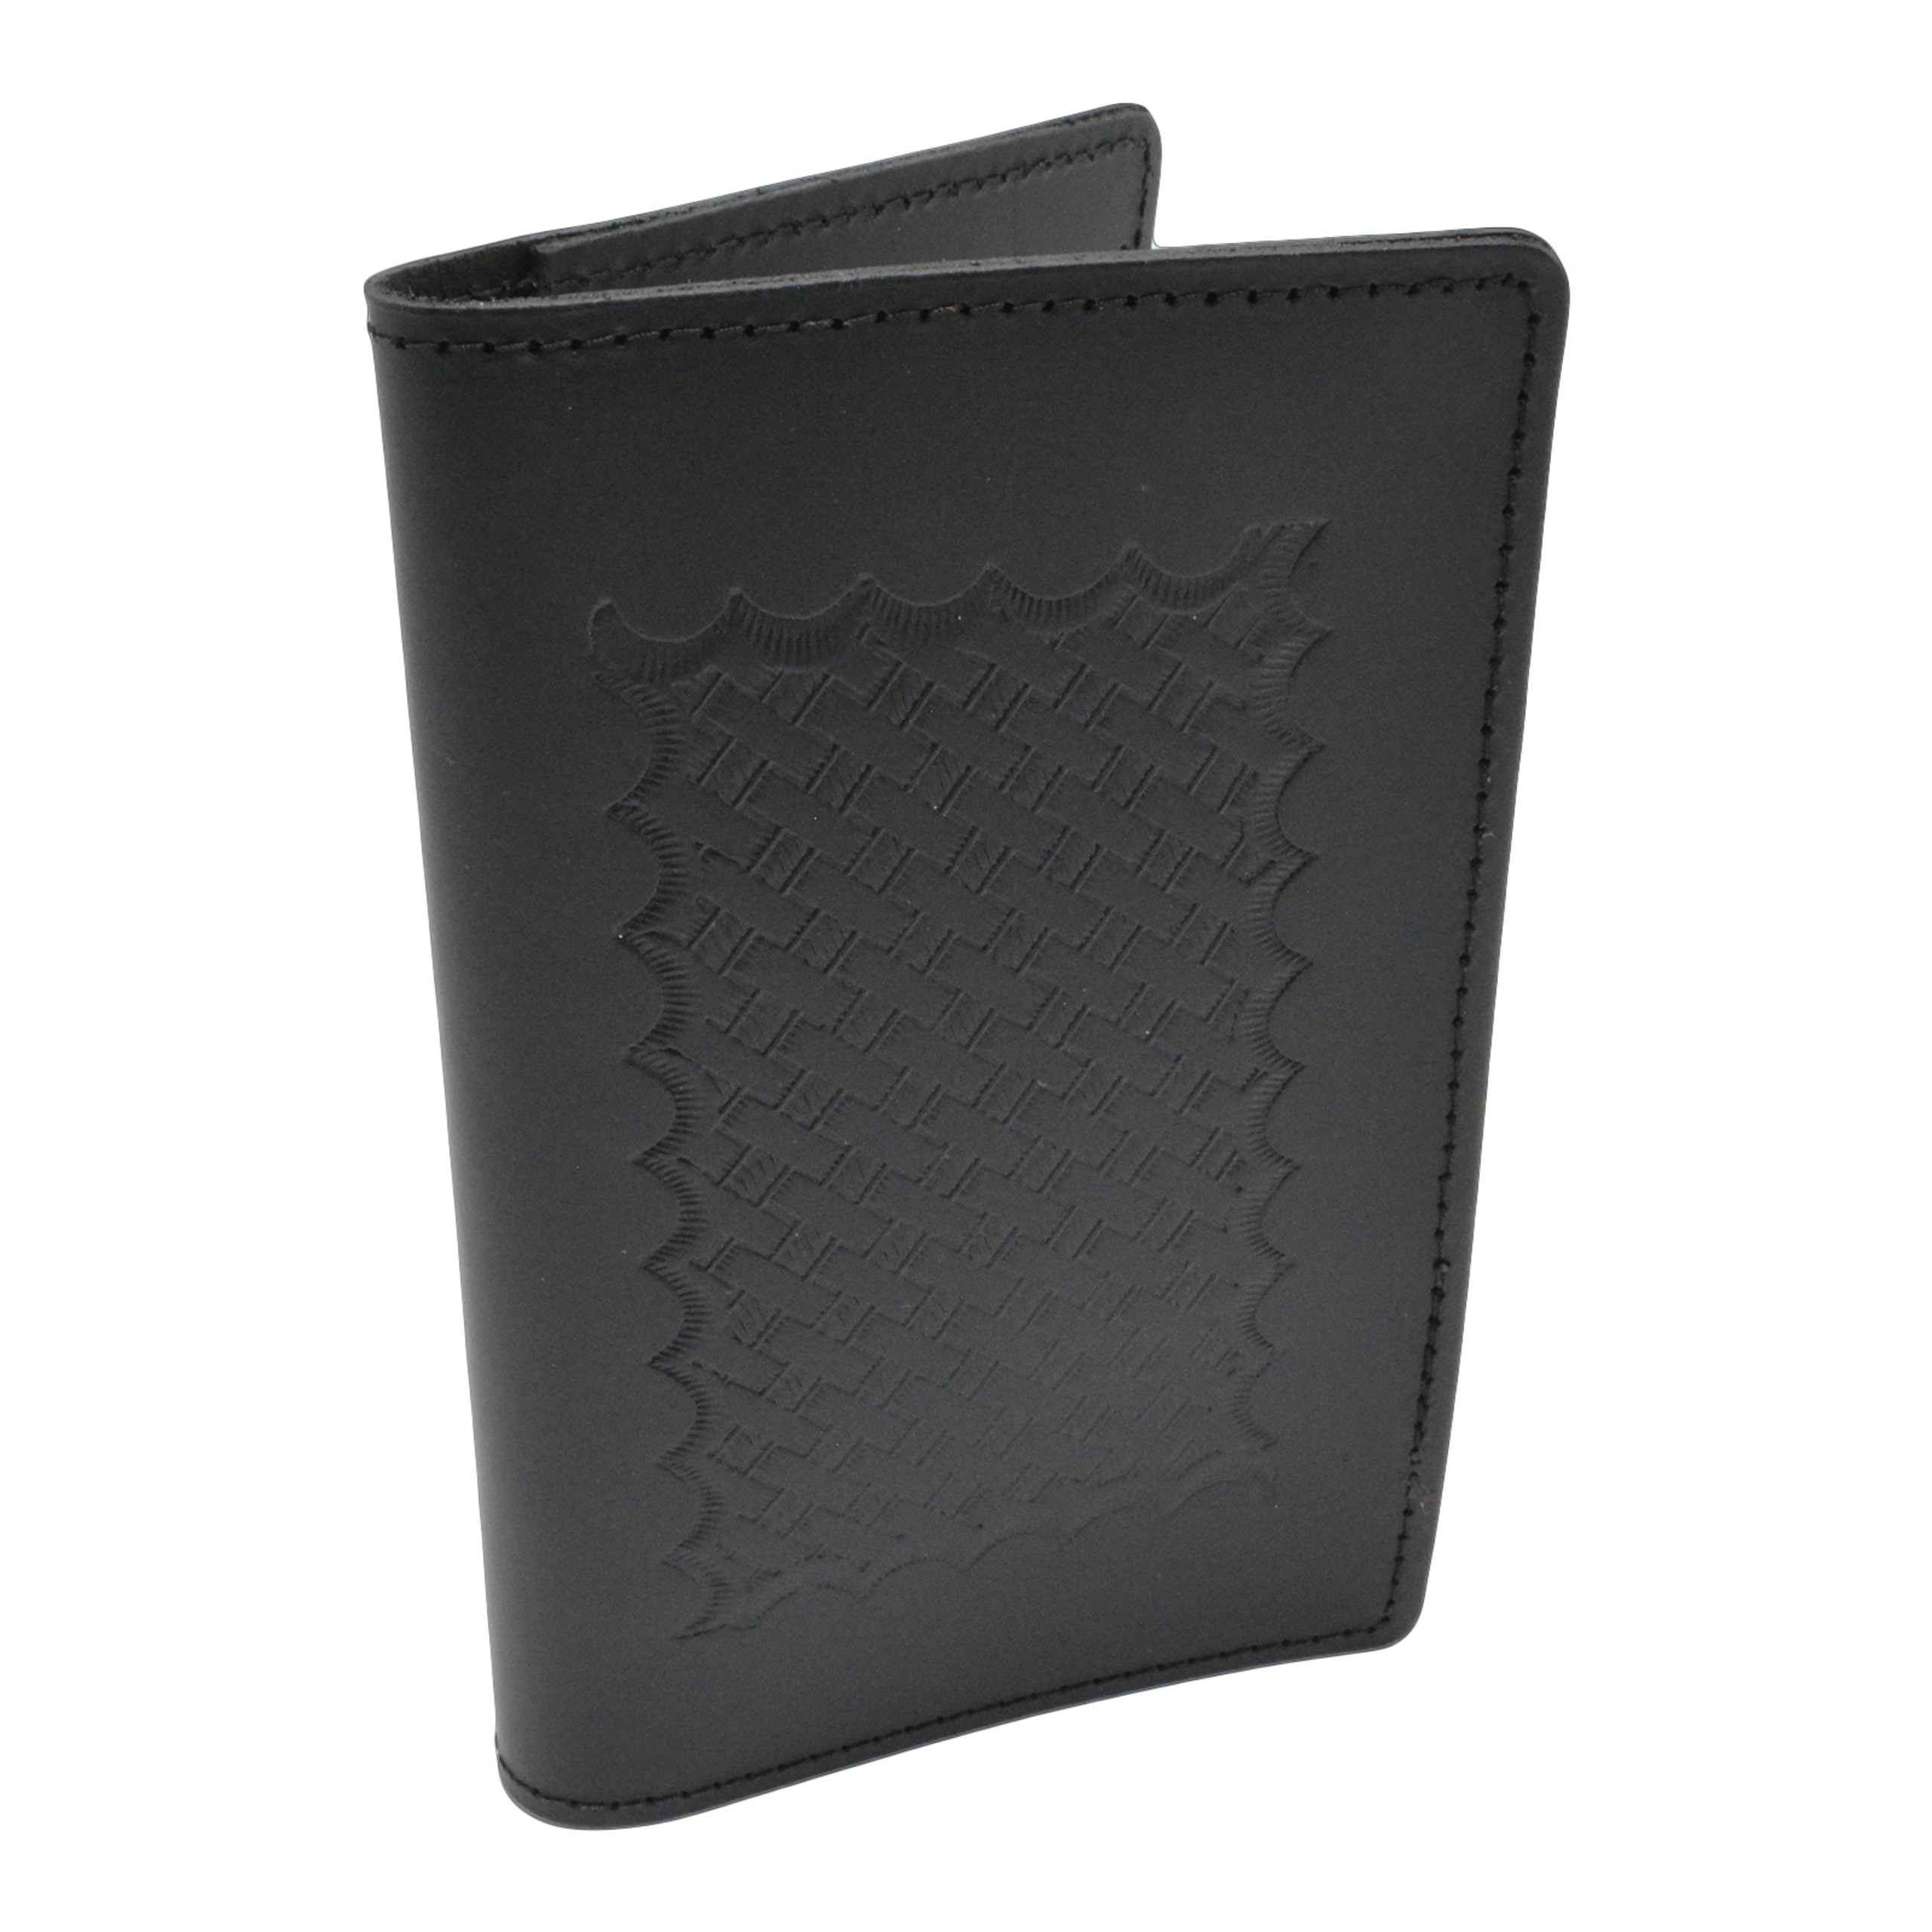 Leather Pocket Calendar Cover Pocket Planner Holder NYDOC Leather